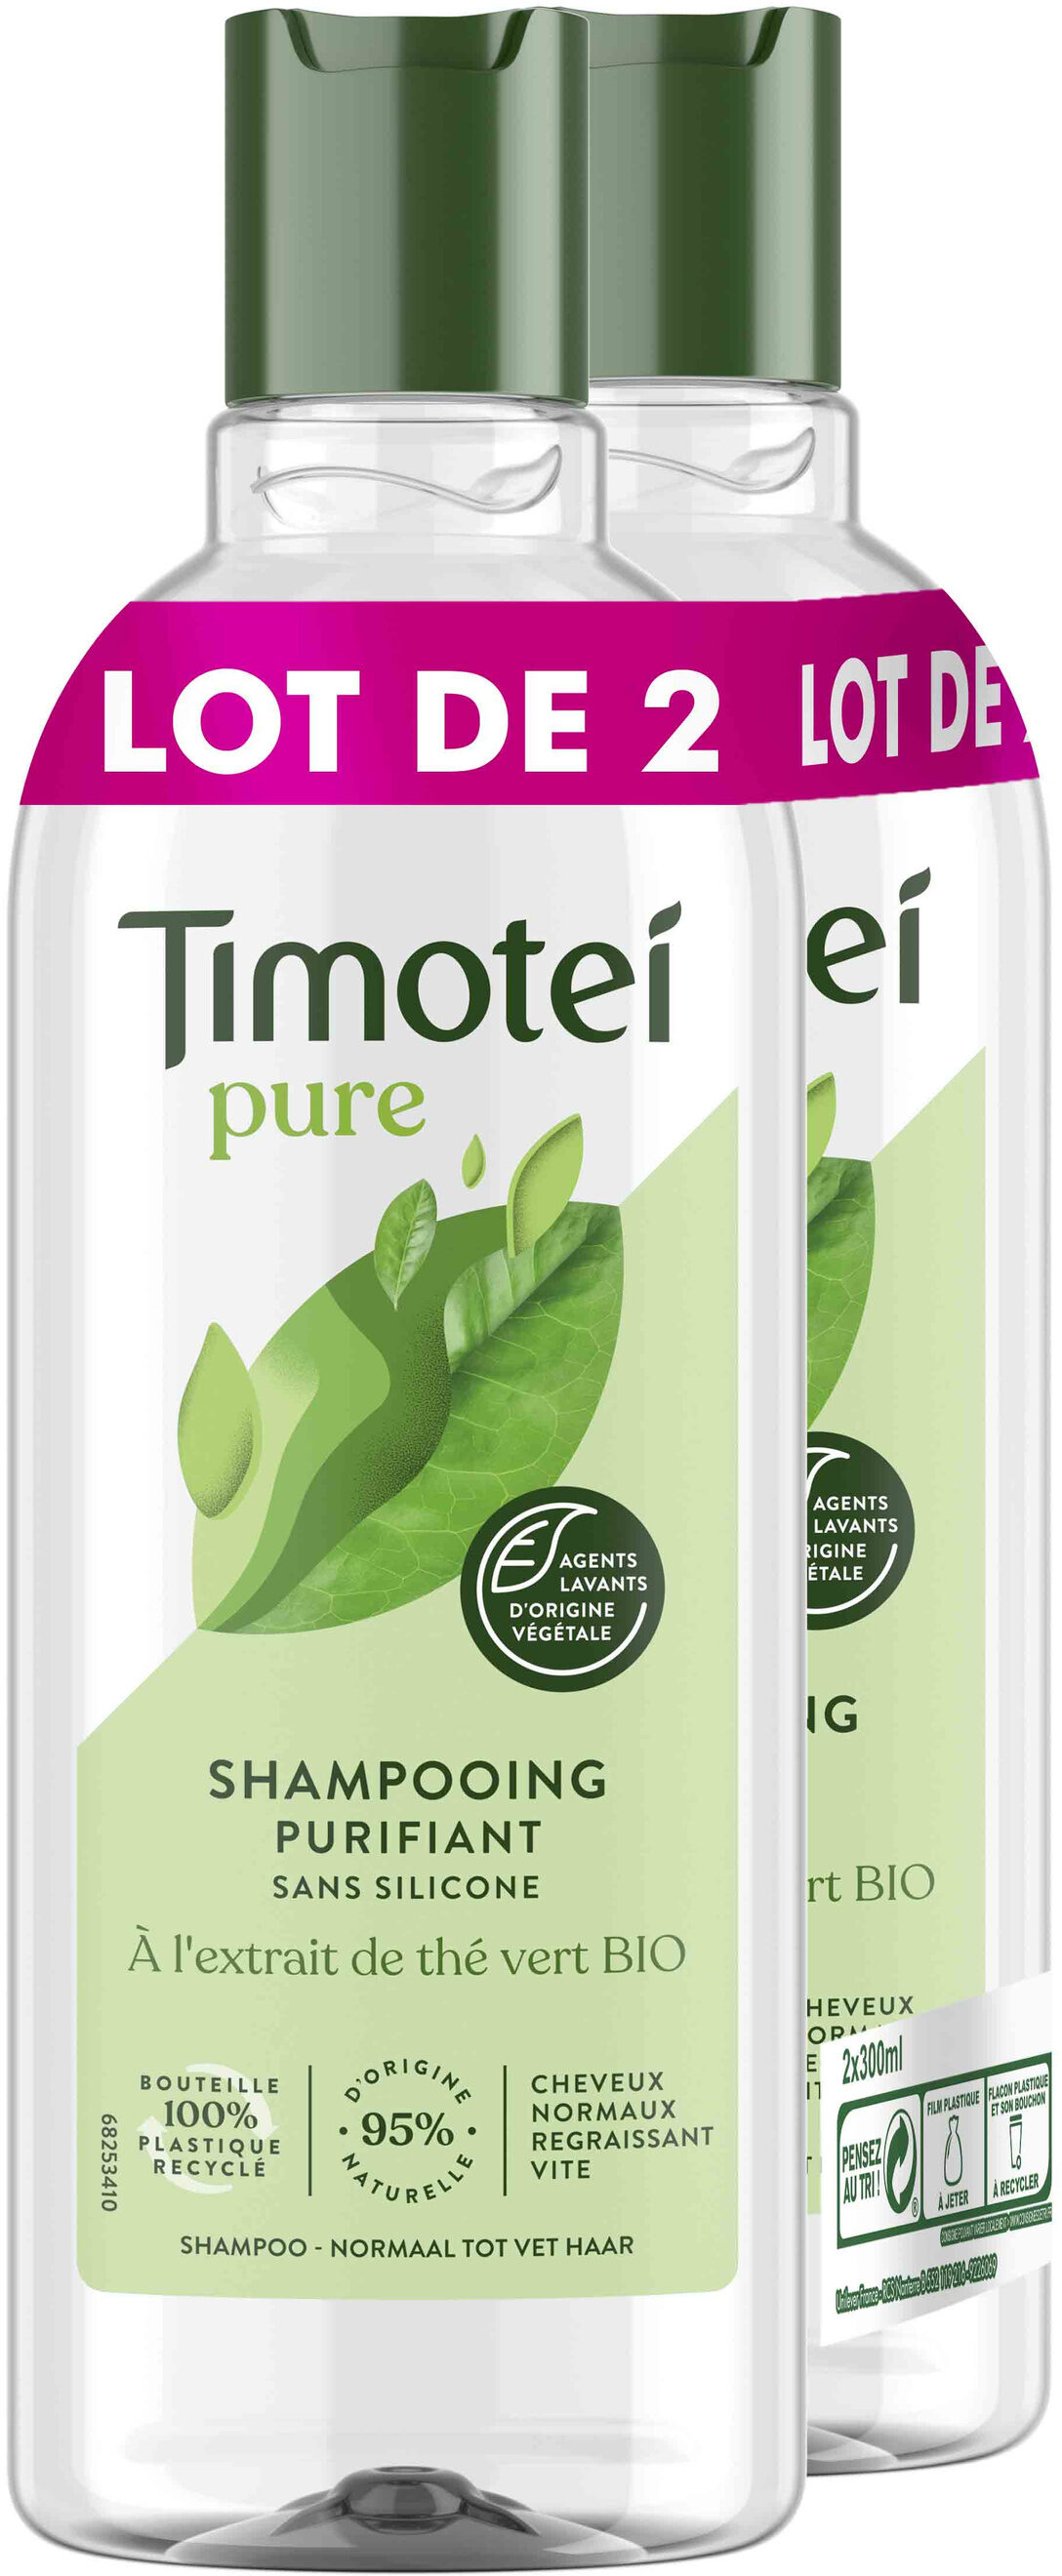 Timotei Shampooing Purifiant 2x300ml - Product - fr